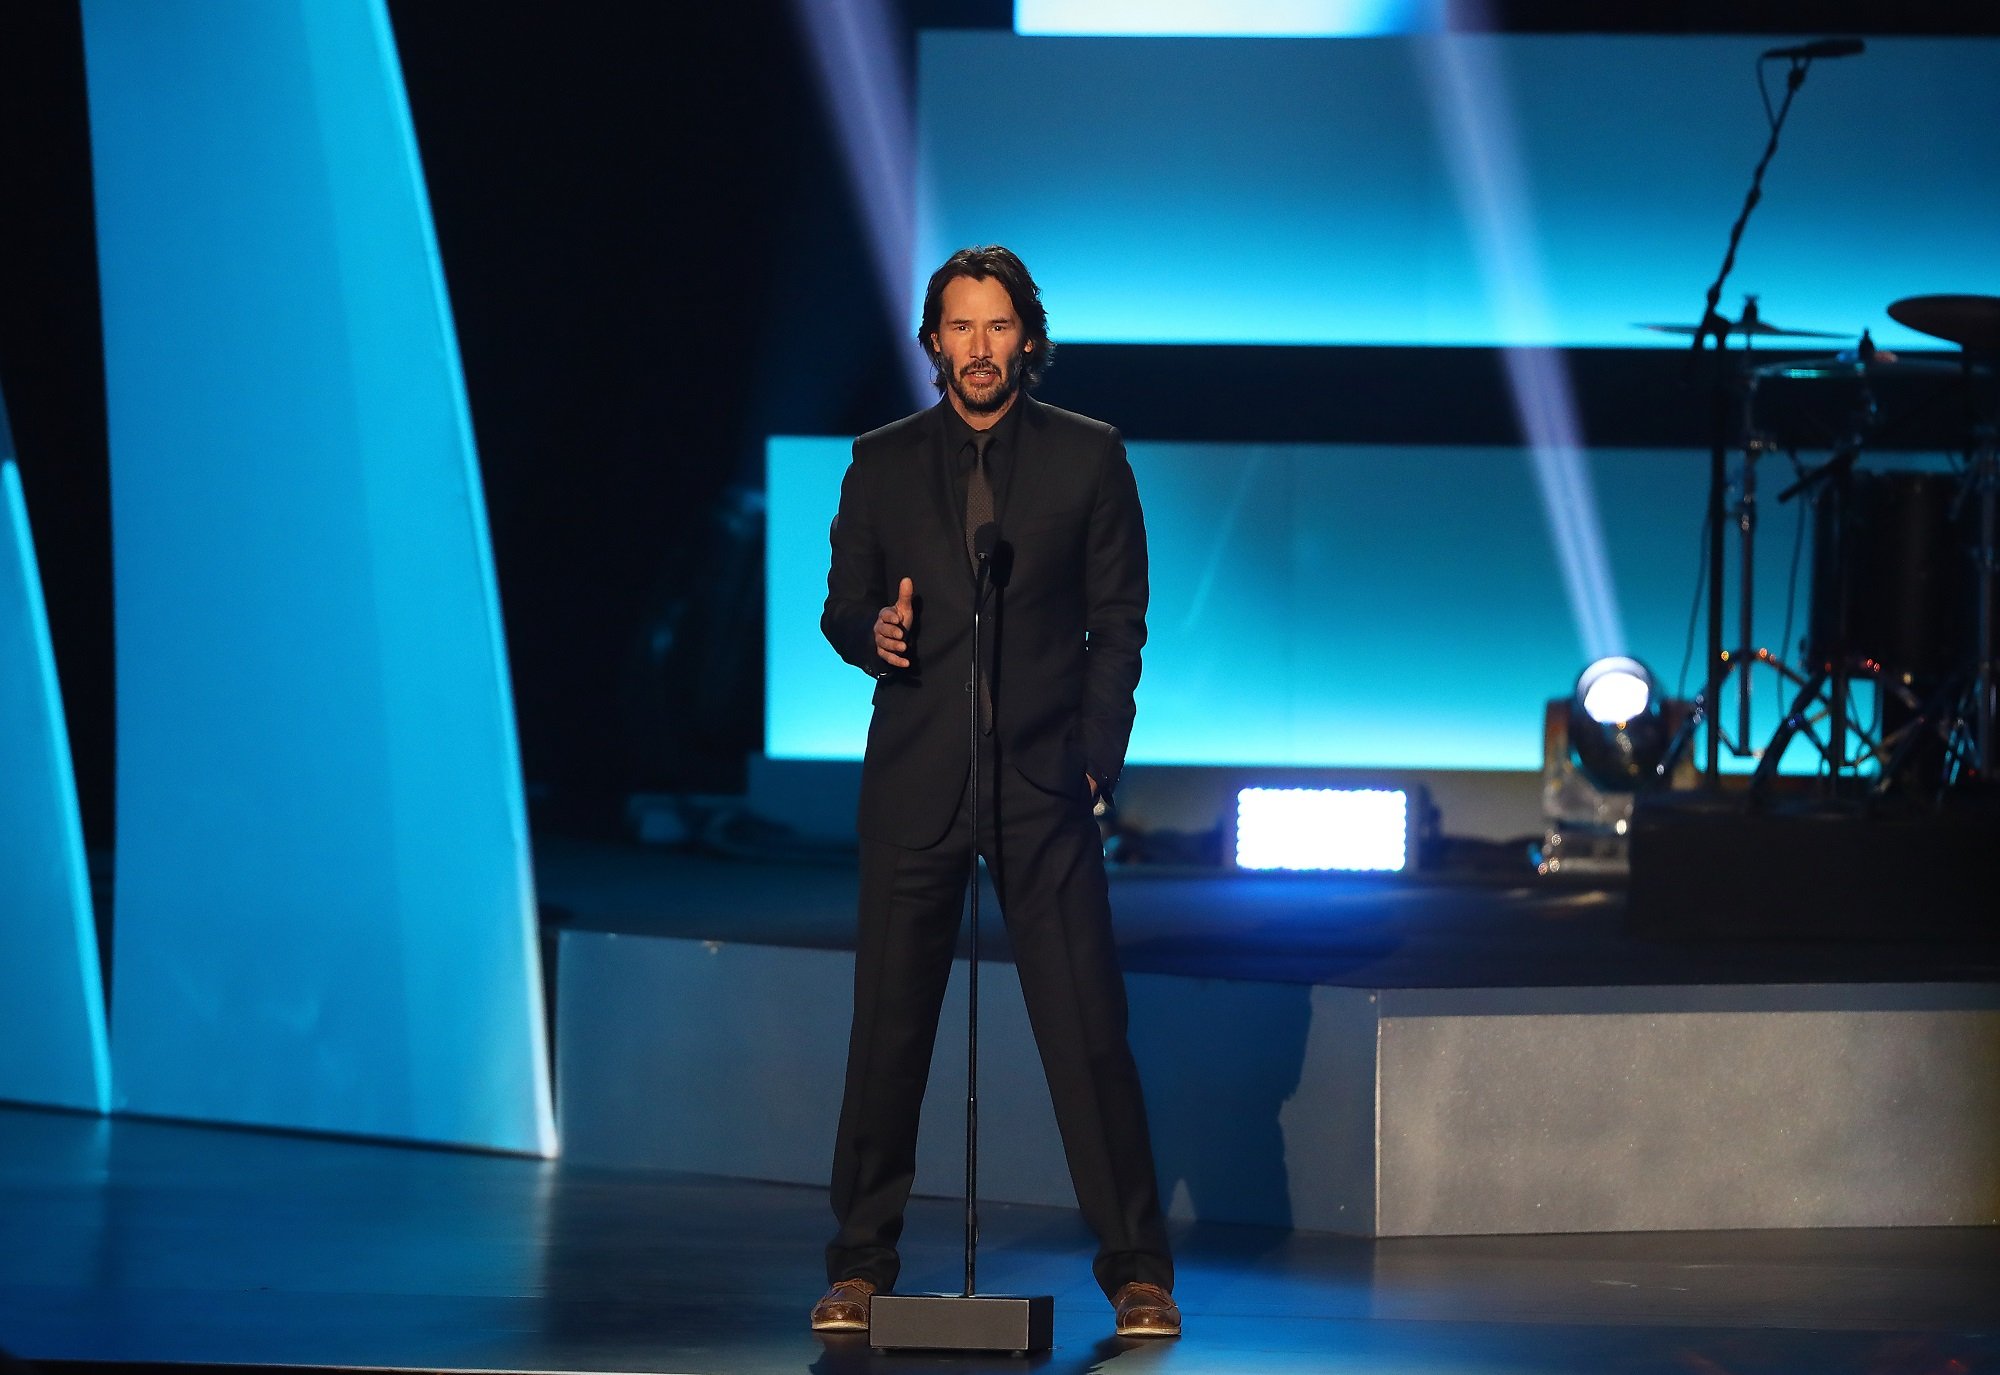 Keanu Reeves speaks on stage